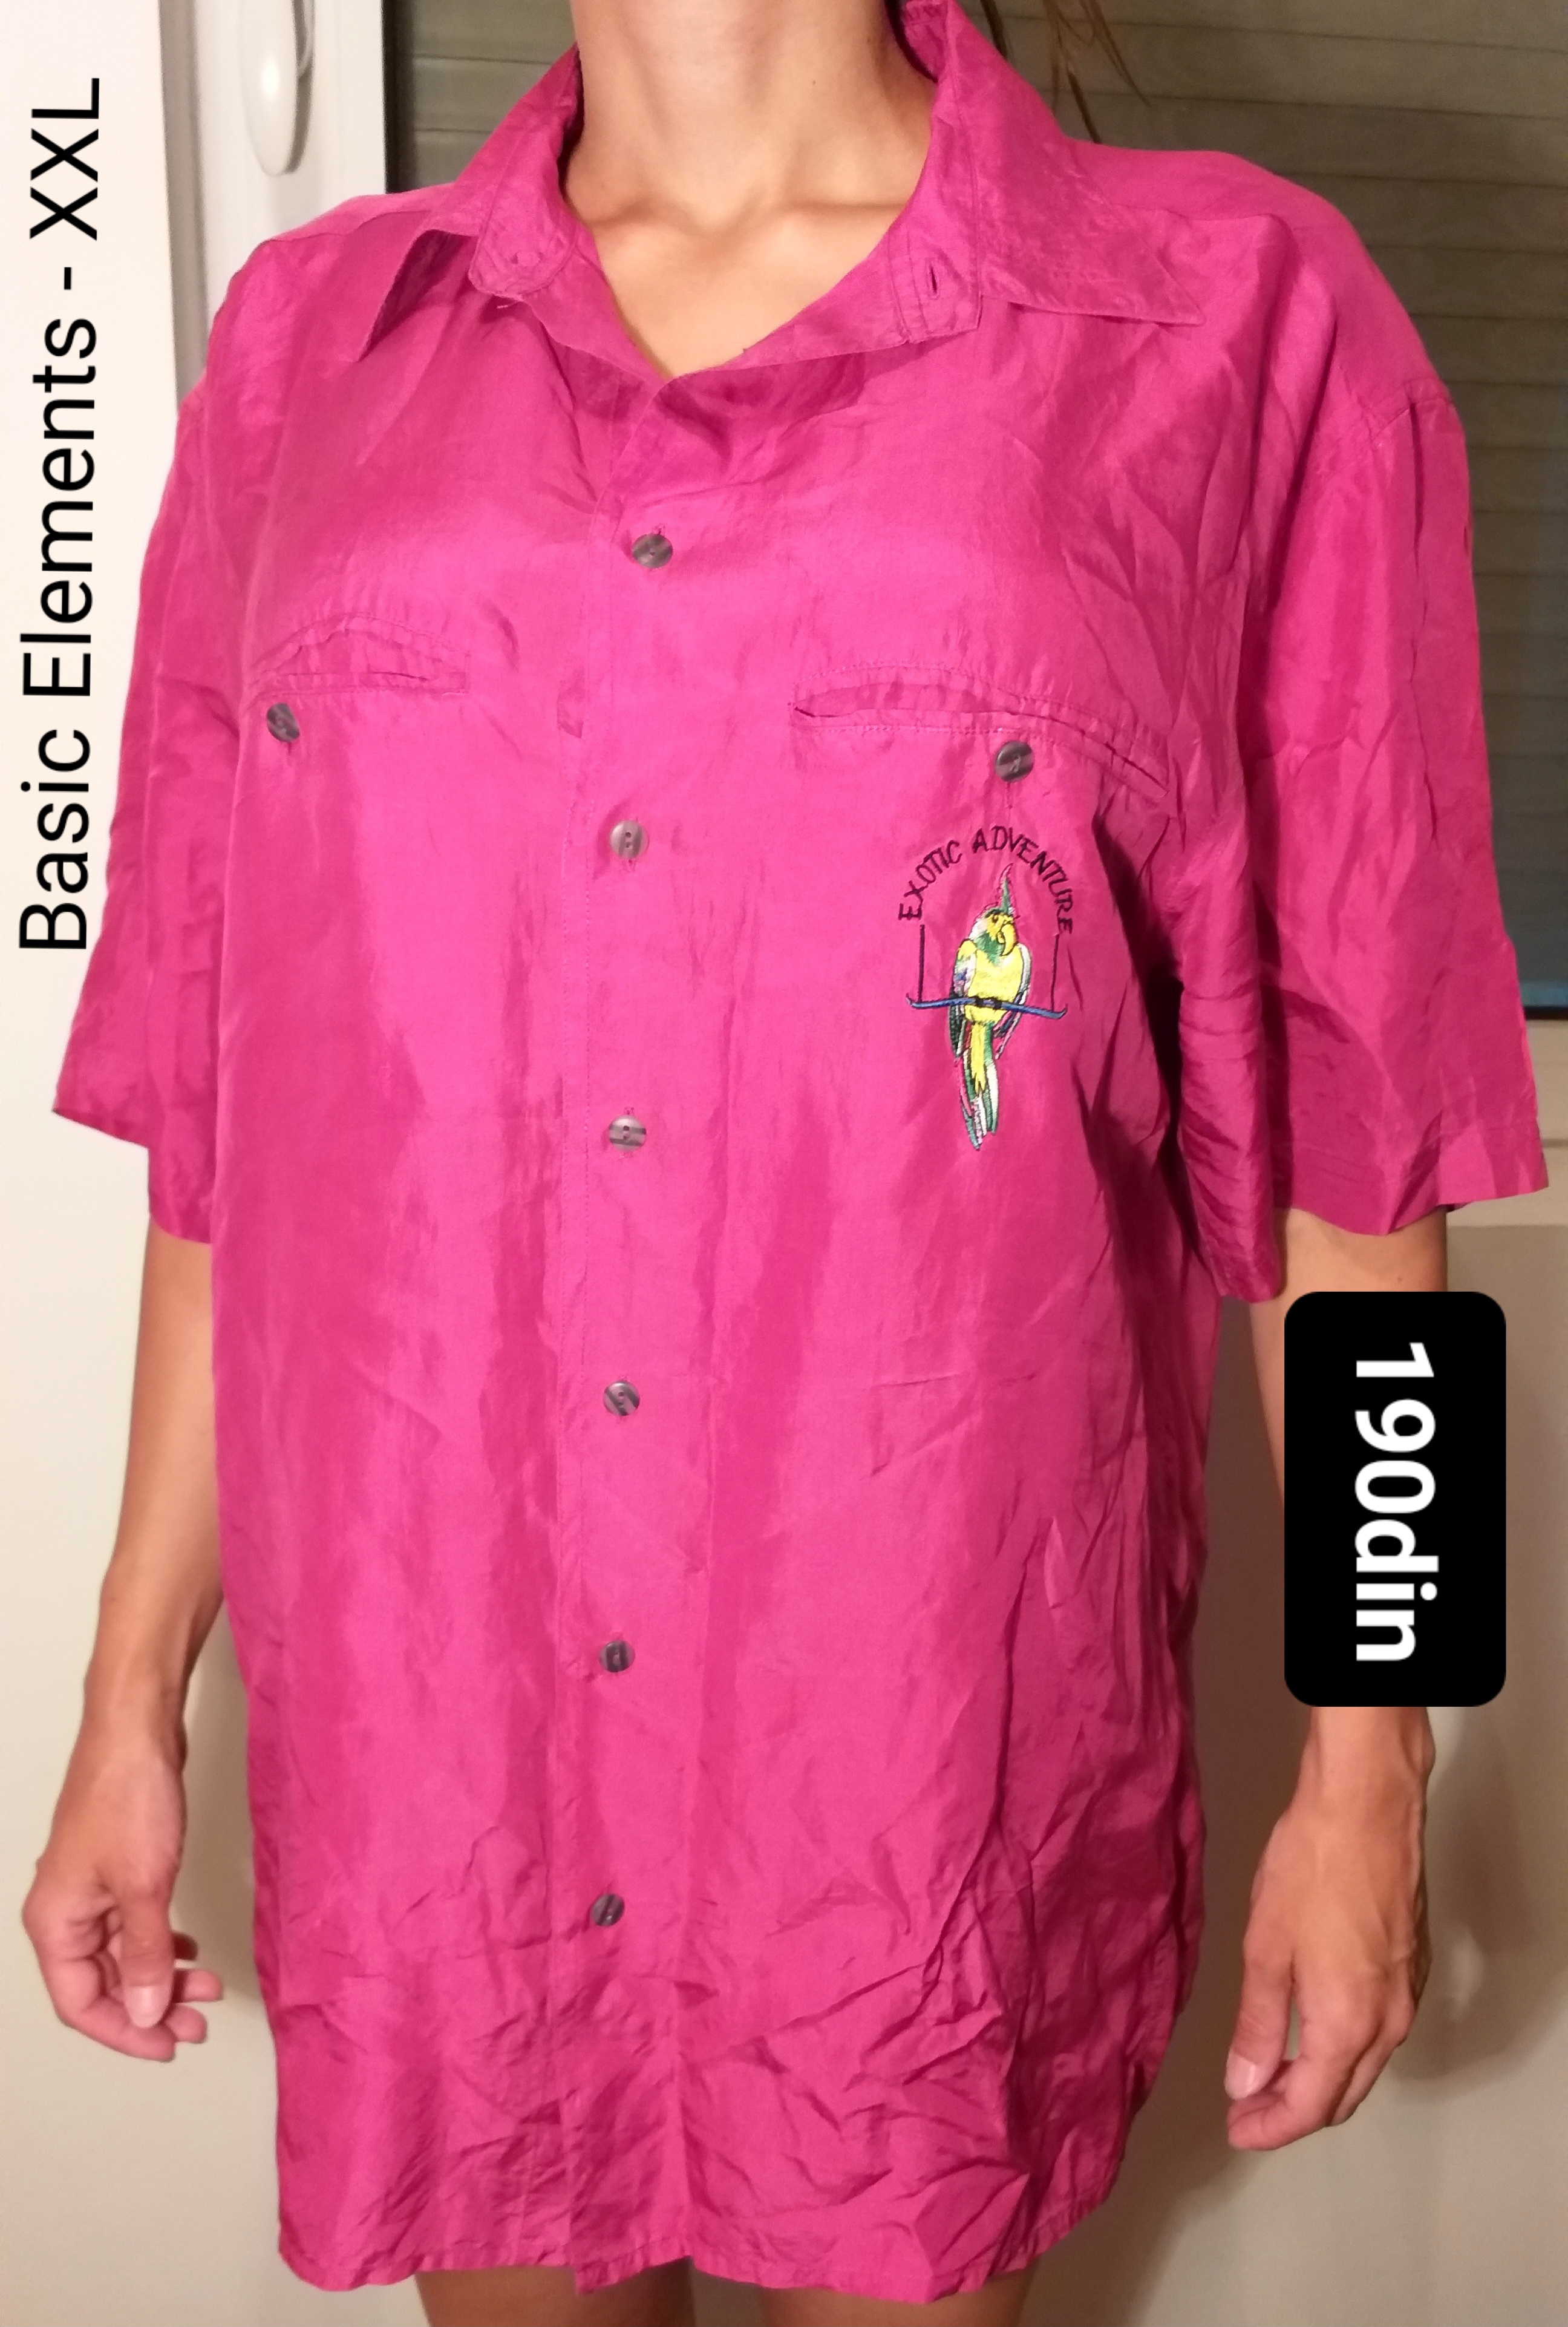 Basic Elements ženska košulja roze XXL/44